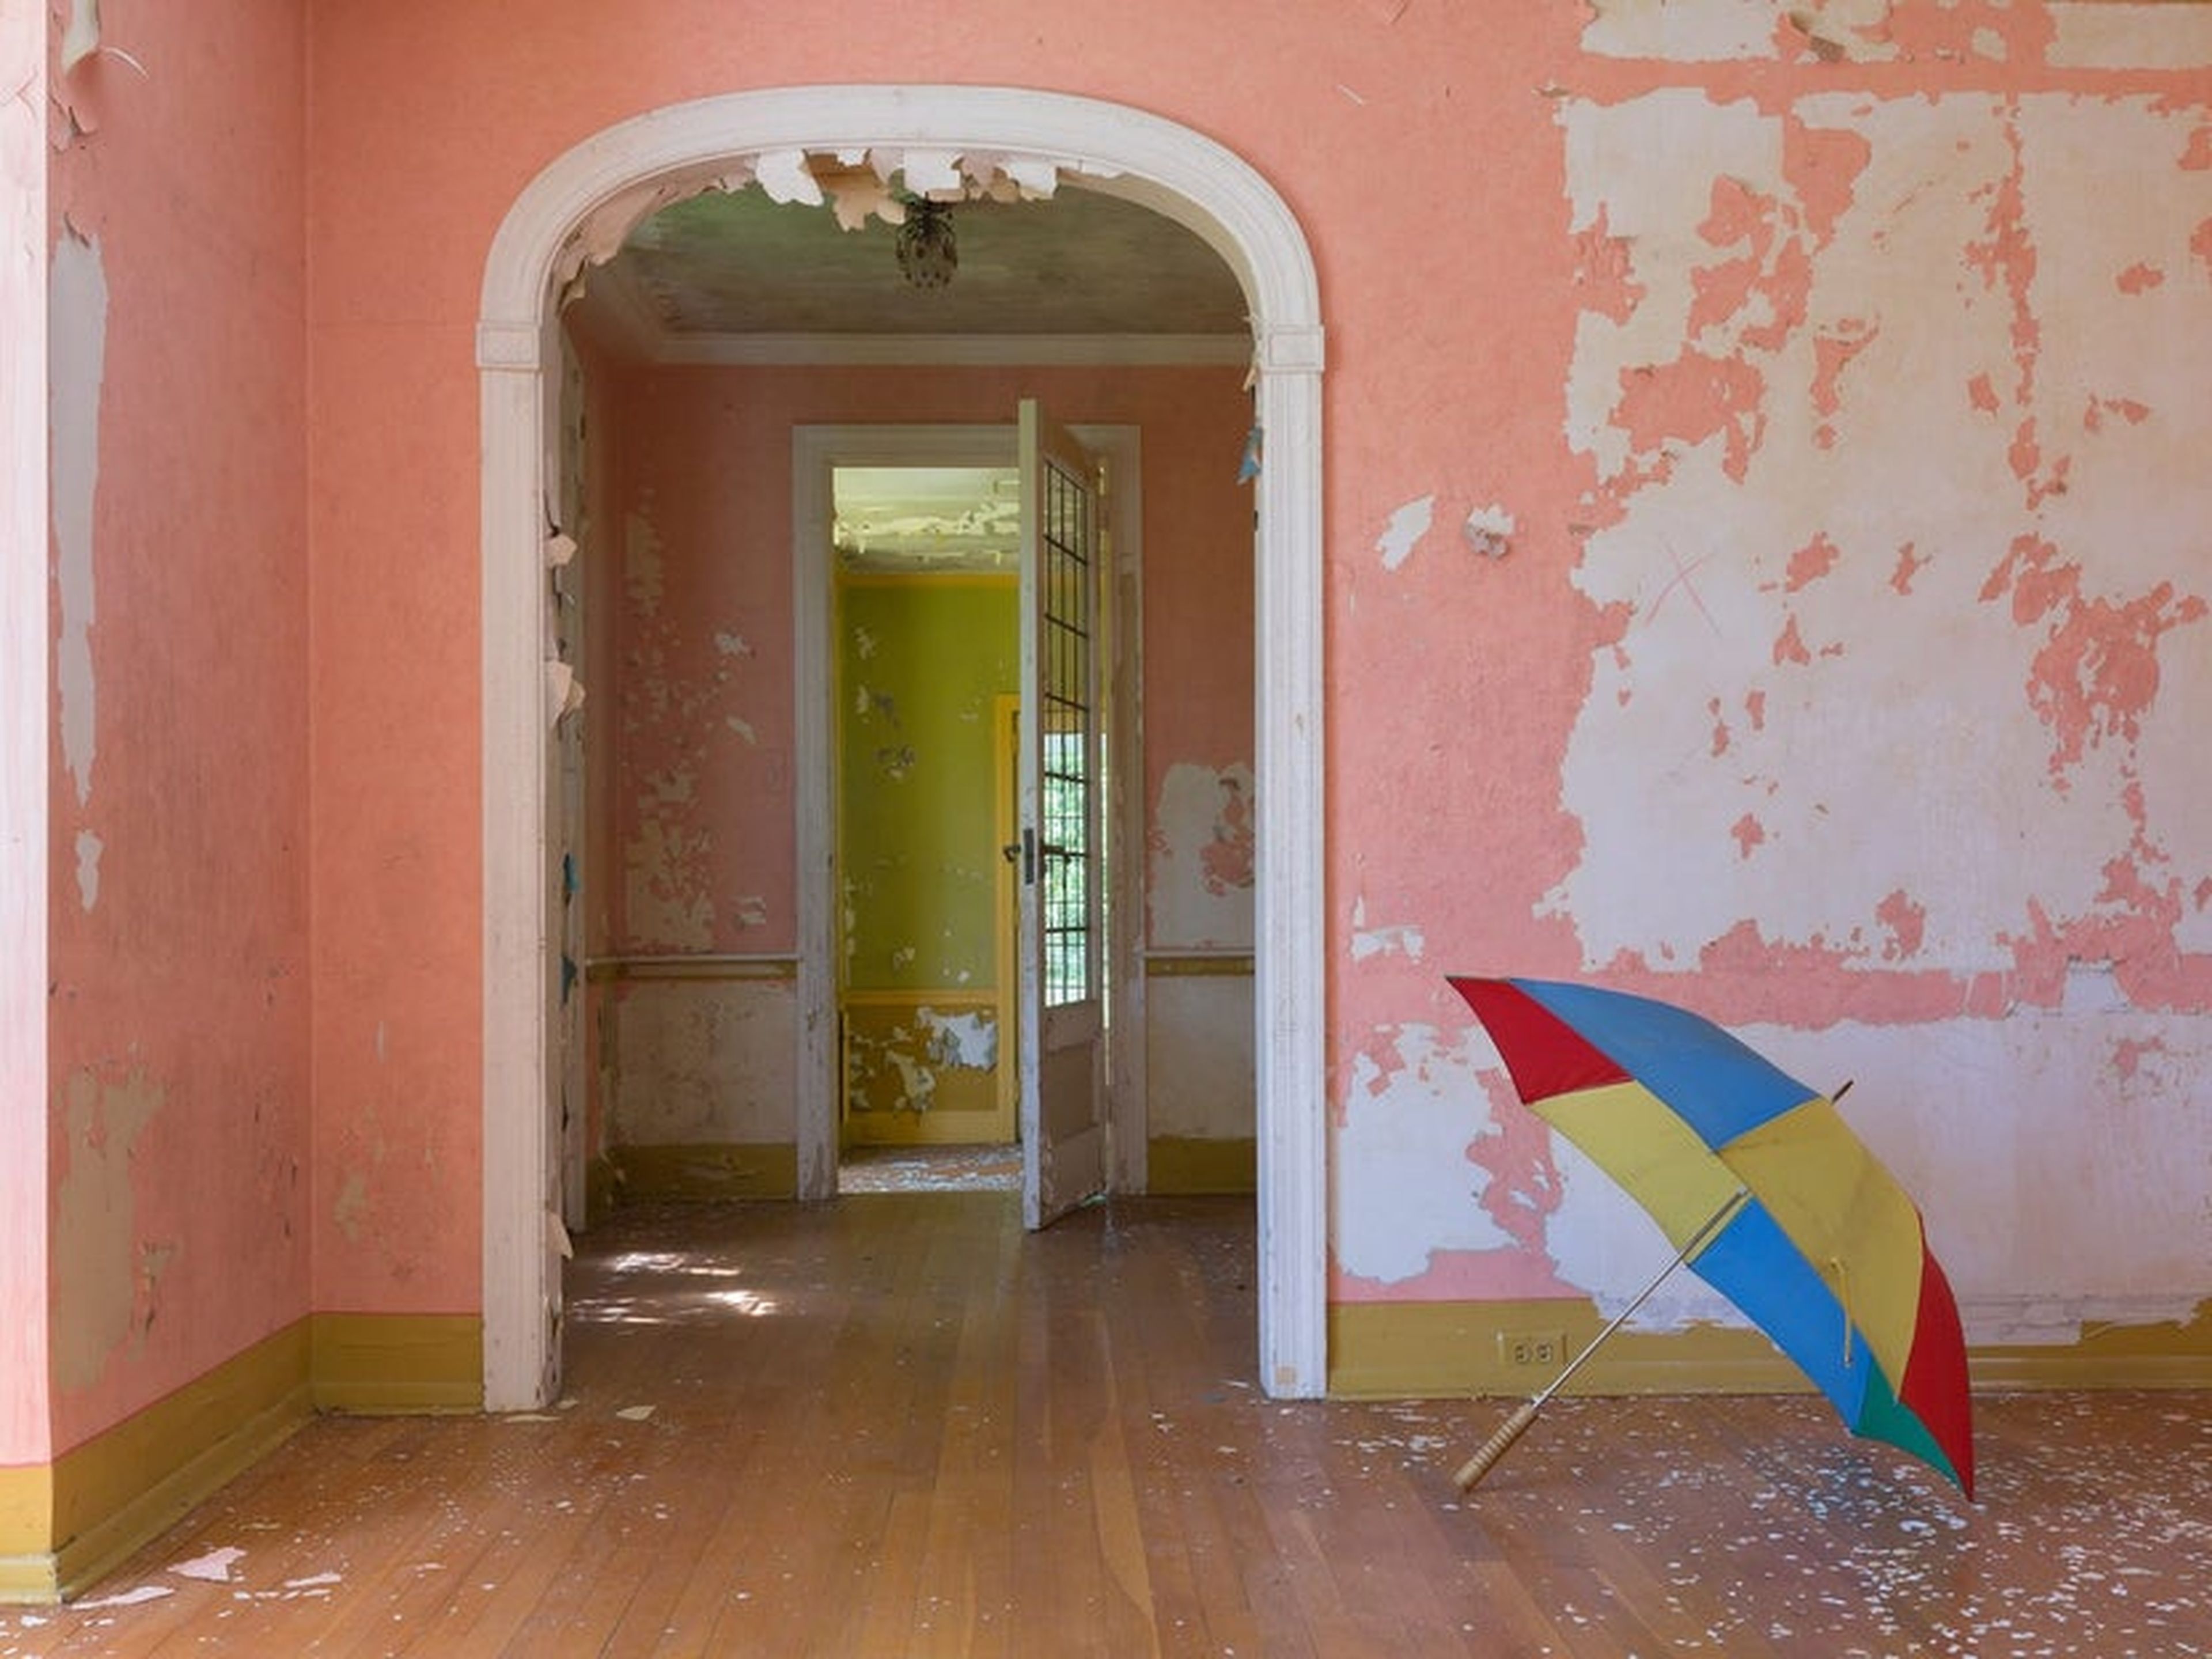 En toda la casa, el fotógrafo encontró cosas como un paraguas de colores, un juego de croquet y botellas de vino viejas.